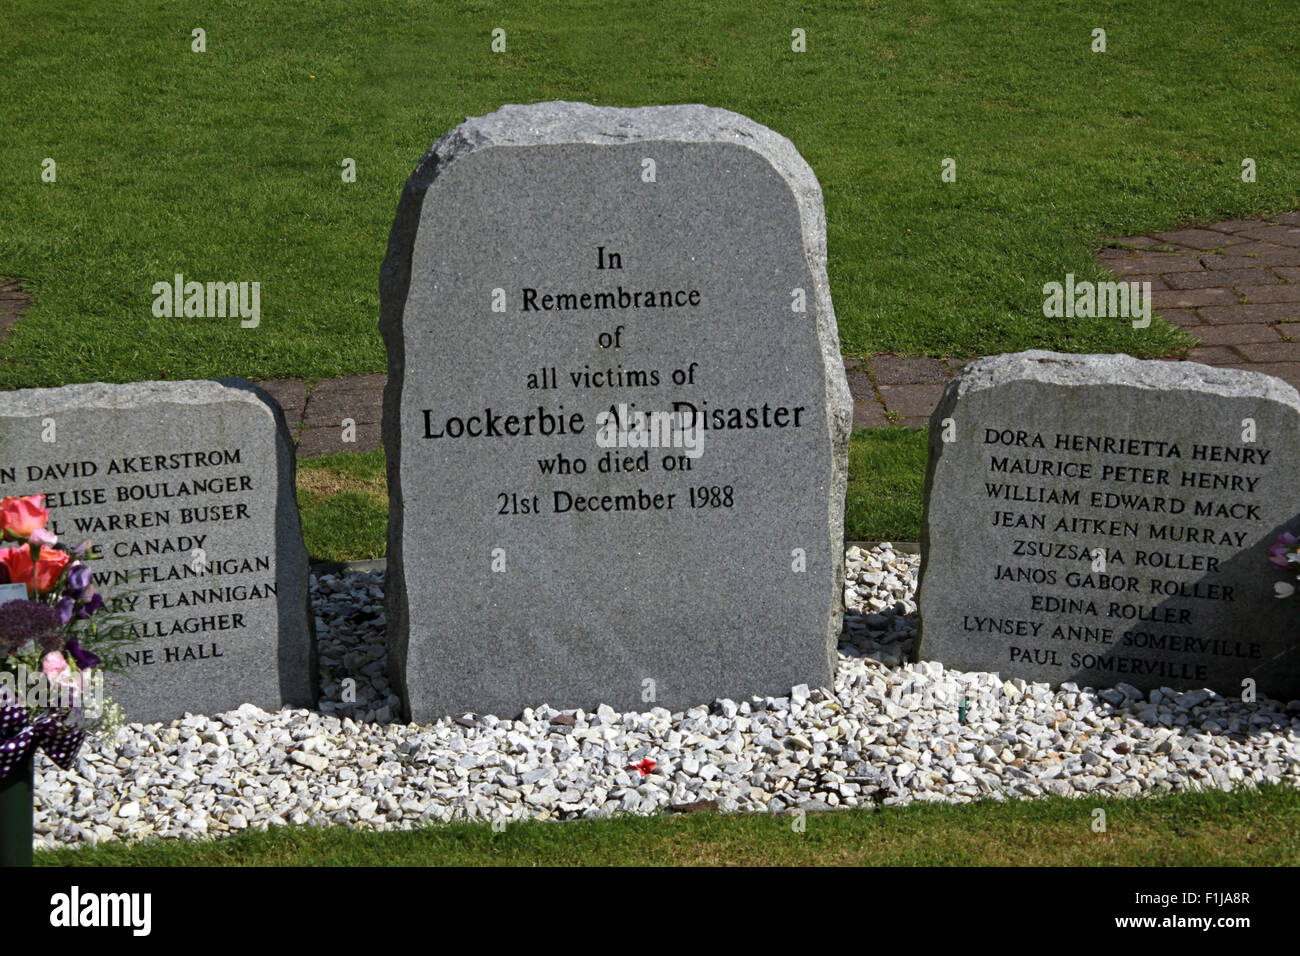 Lockerbie PanAm103 à Remembrance Memorial Stone, Écosse, Royaume-Uni, DG11 1HZ - Dumfries Road, Dumfriesshire Banque D'Images